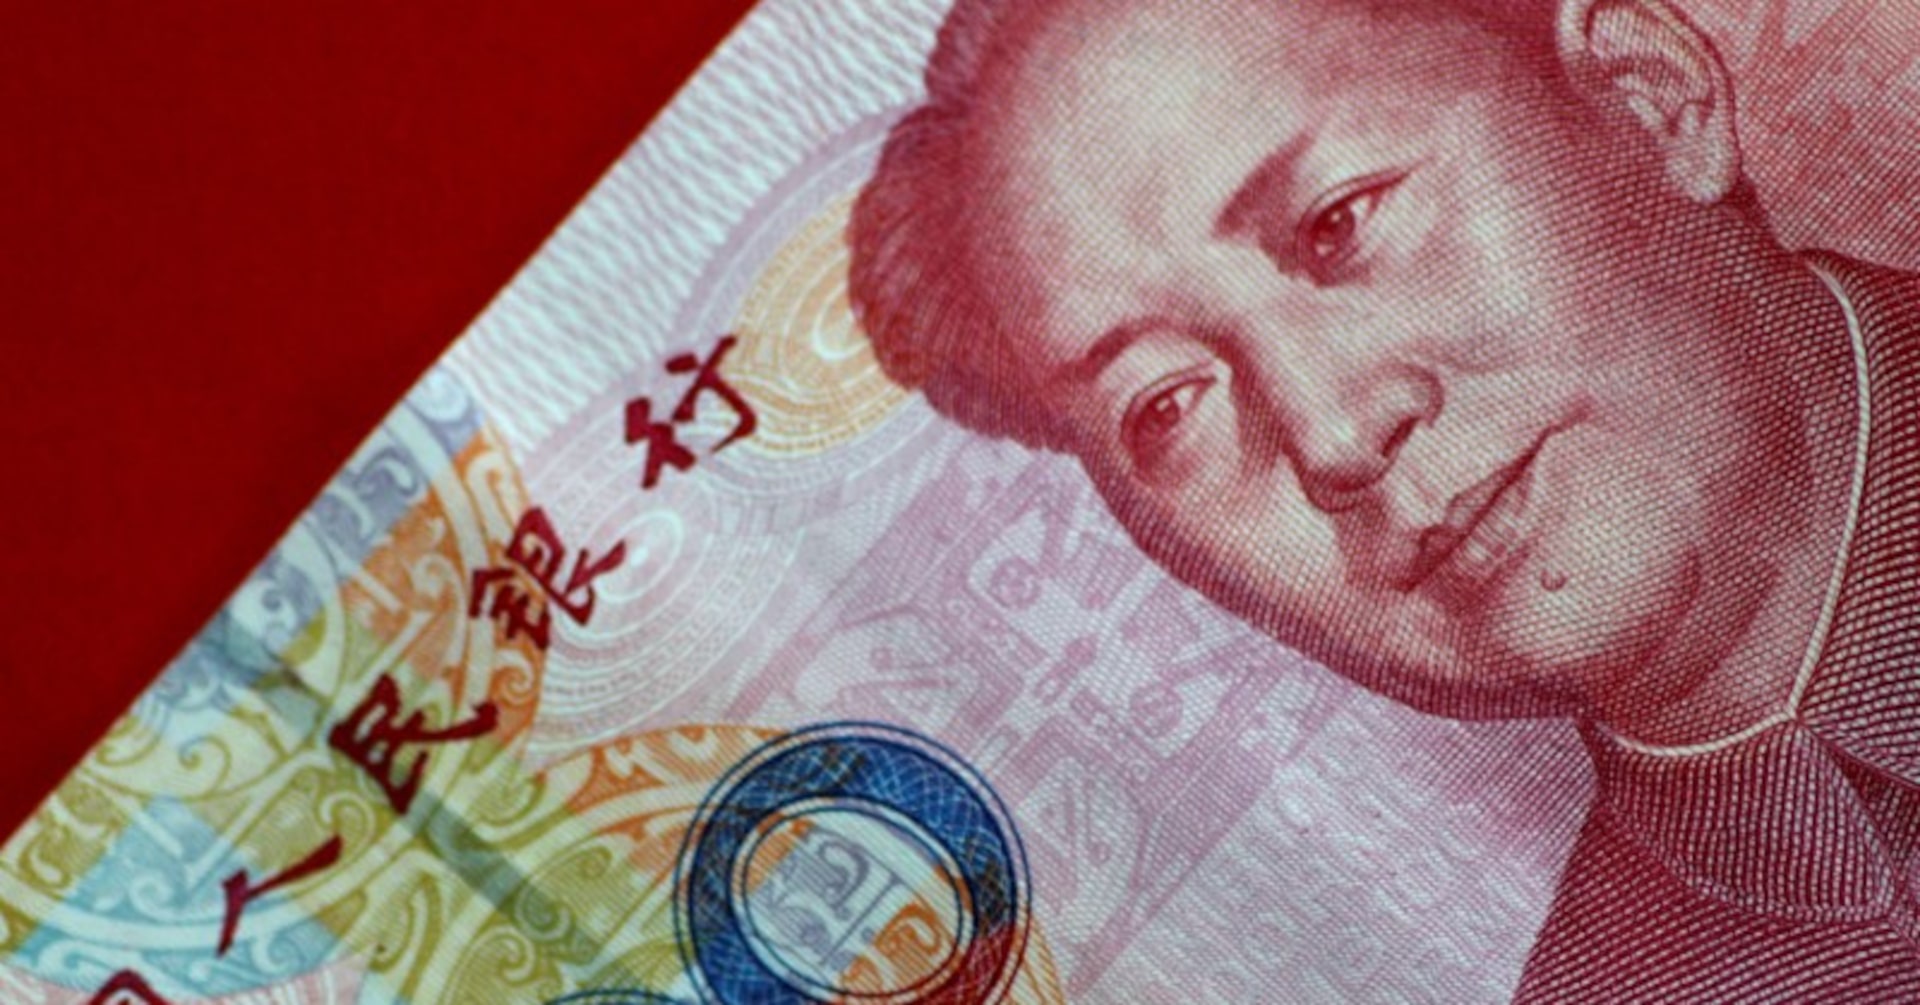 中国、超長期特別国債1兆元を発行へ 景気支援へ17日から